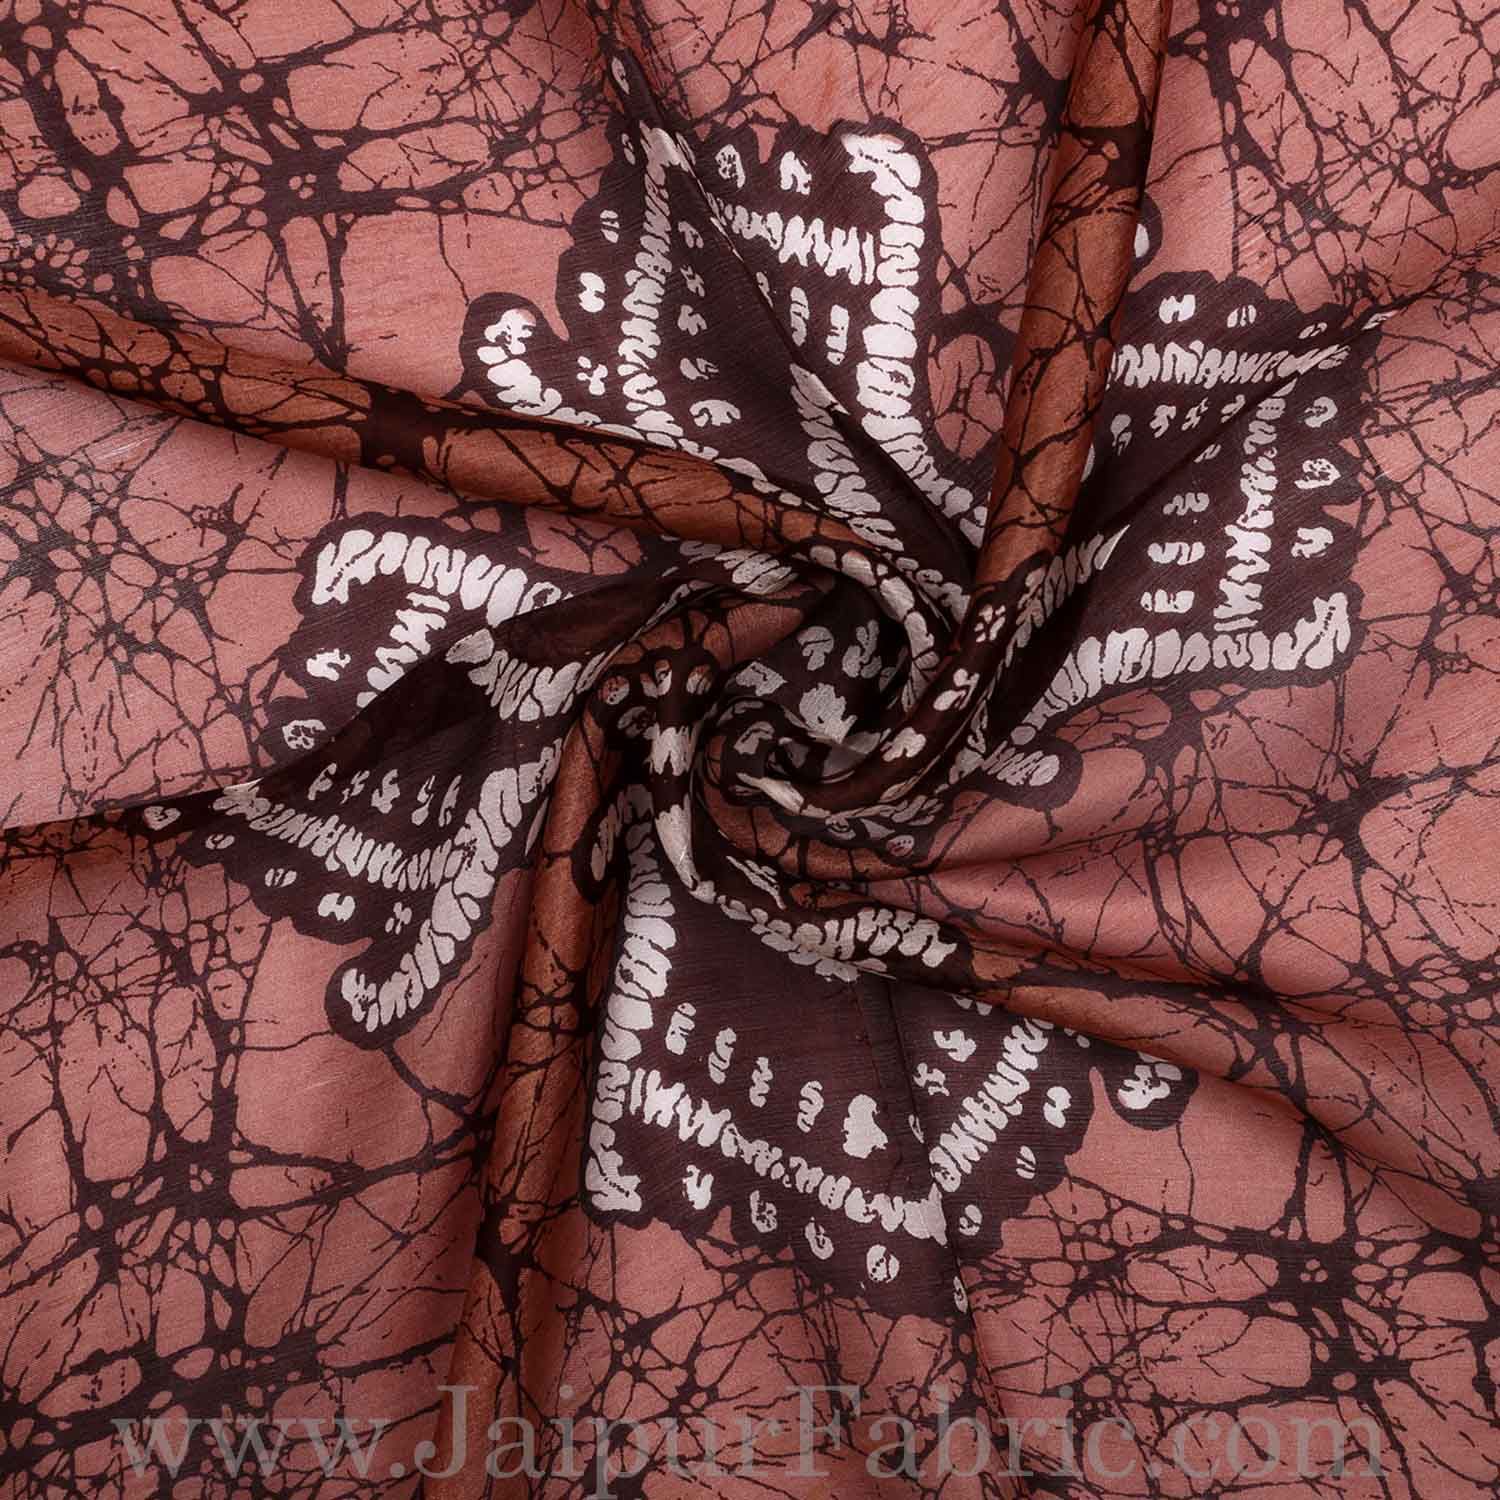 Silk Scarf with Bandhej design